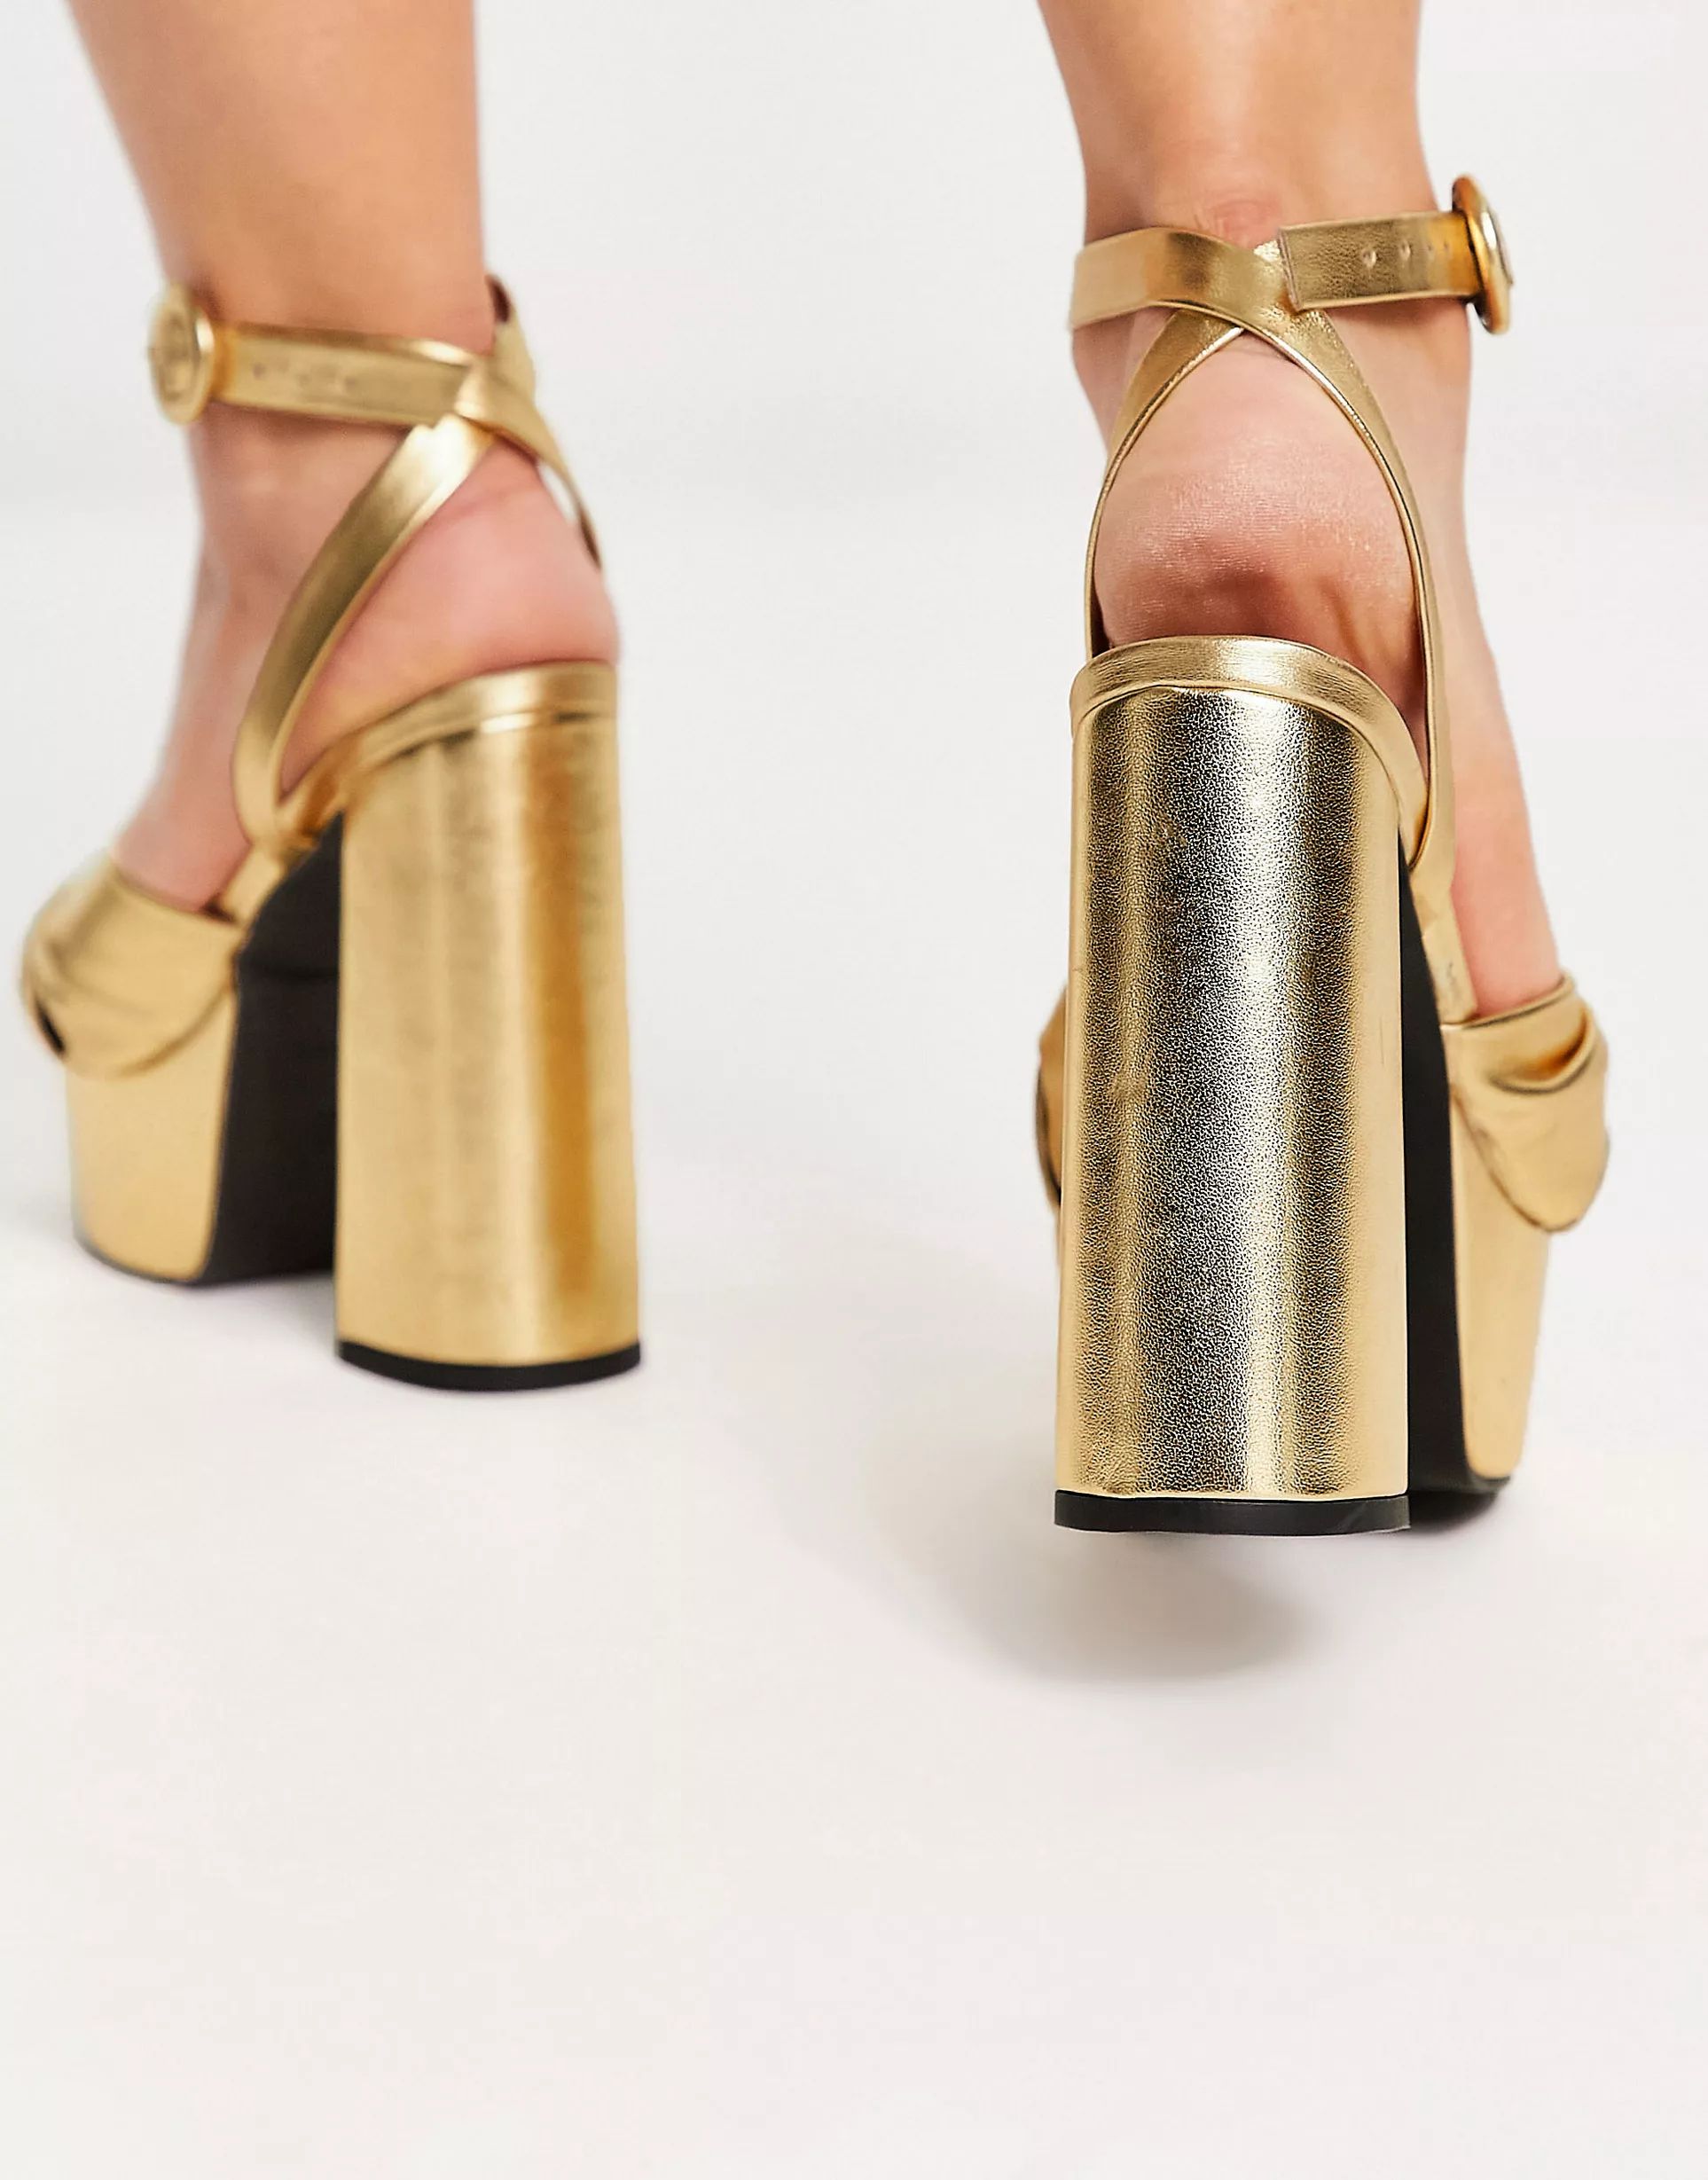 ASOS DESIGN Wide Fit Natia knotted platform heeled sandals in gold | ASOS (Global)